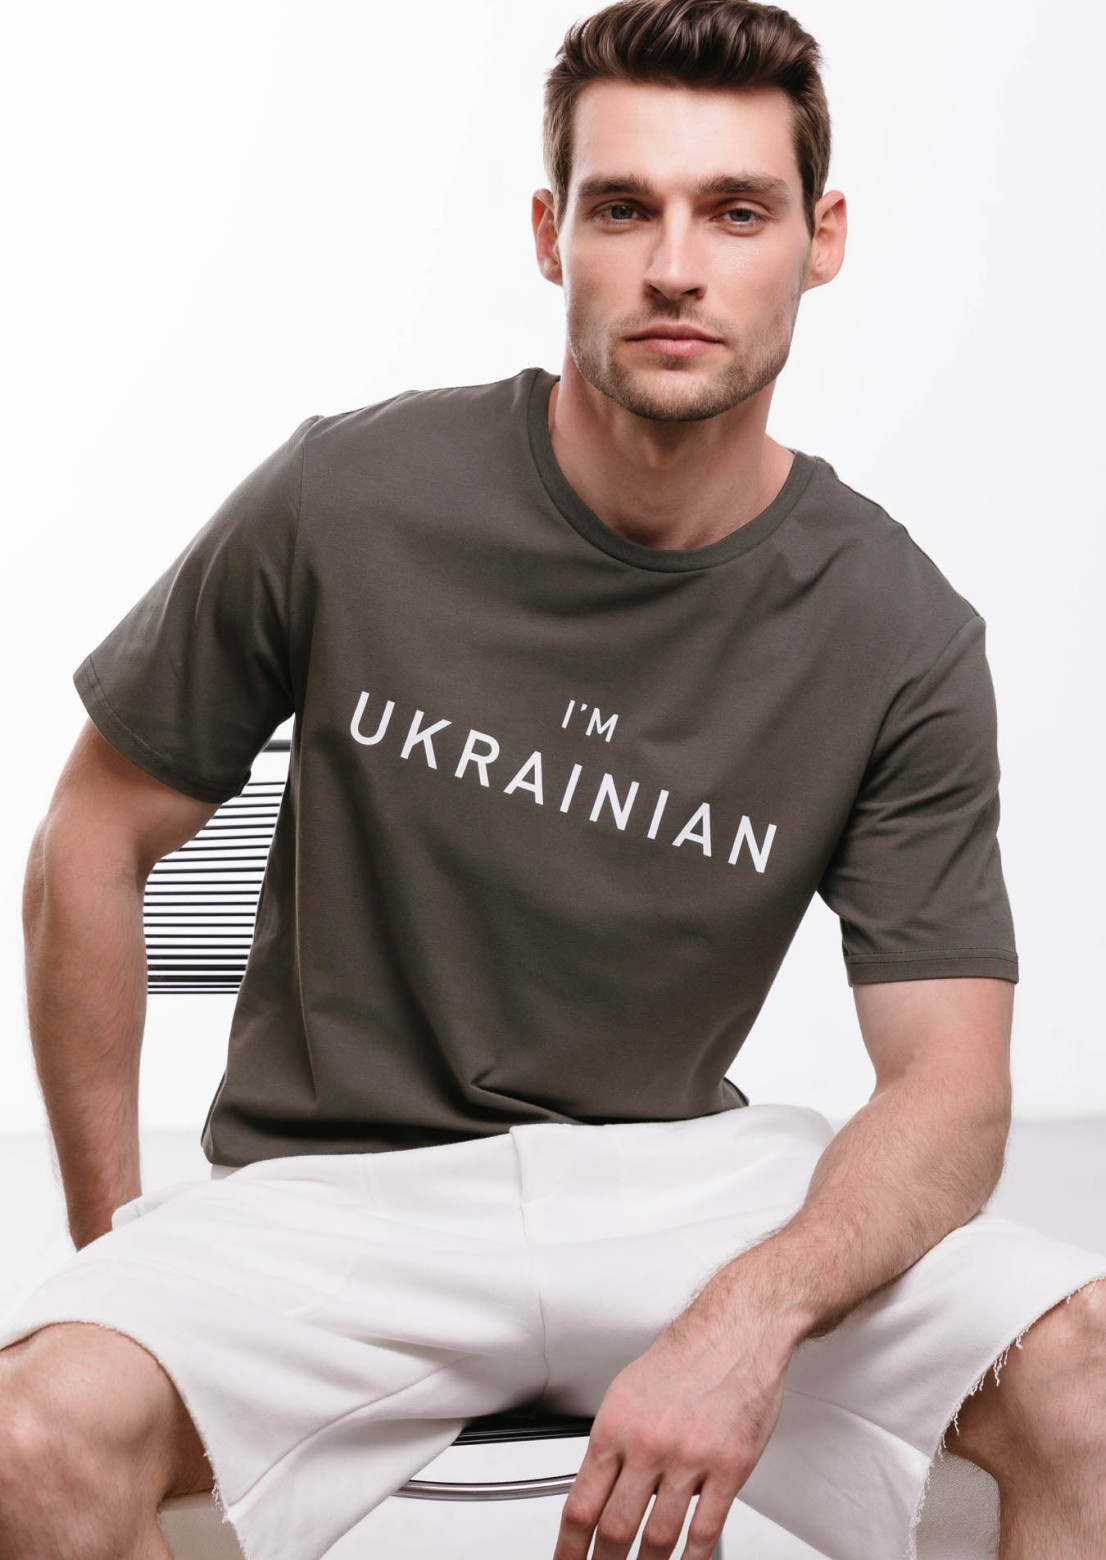 Men khaki T-shirt "I'm Ukrainian"